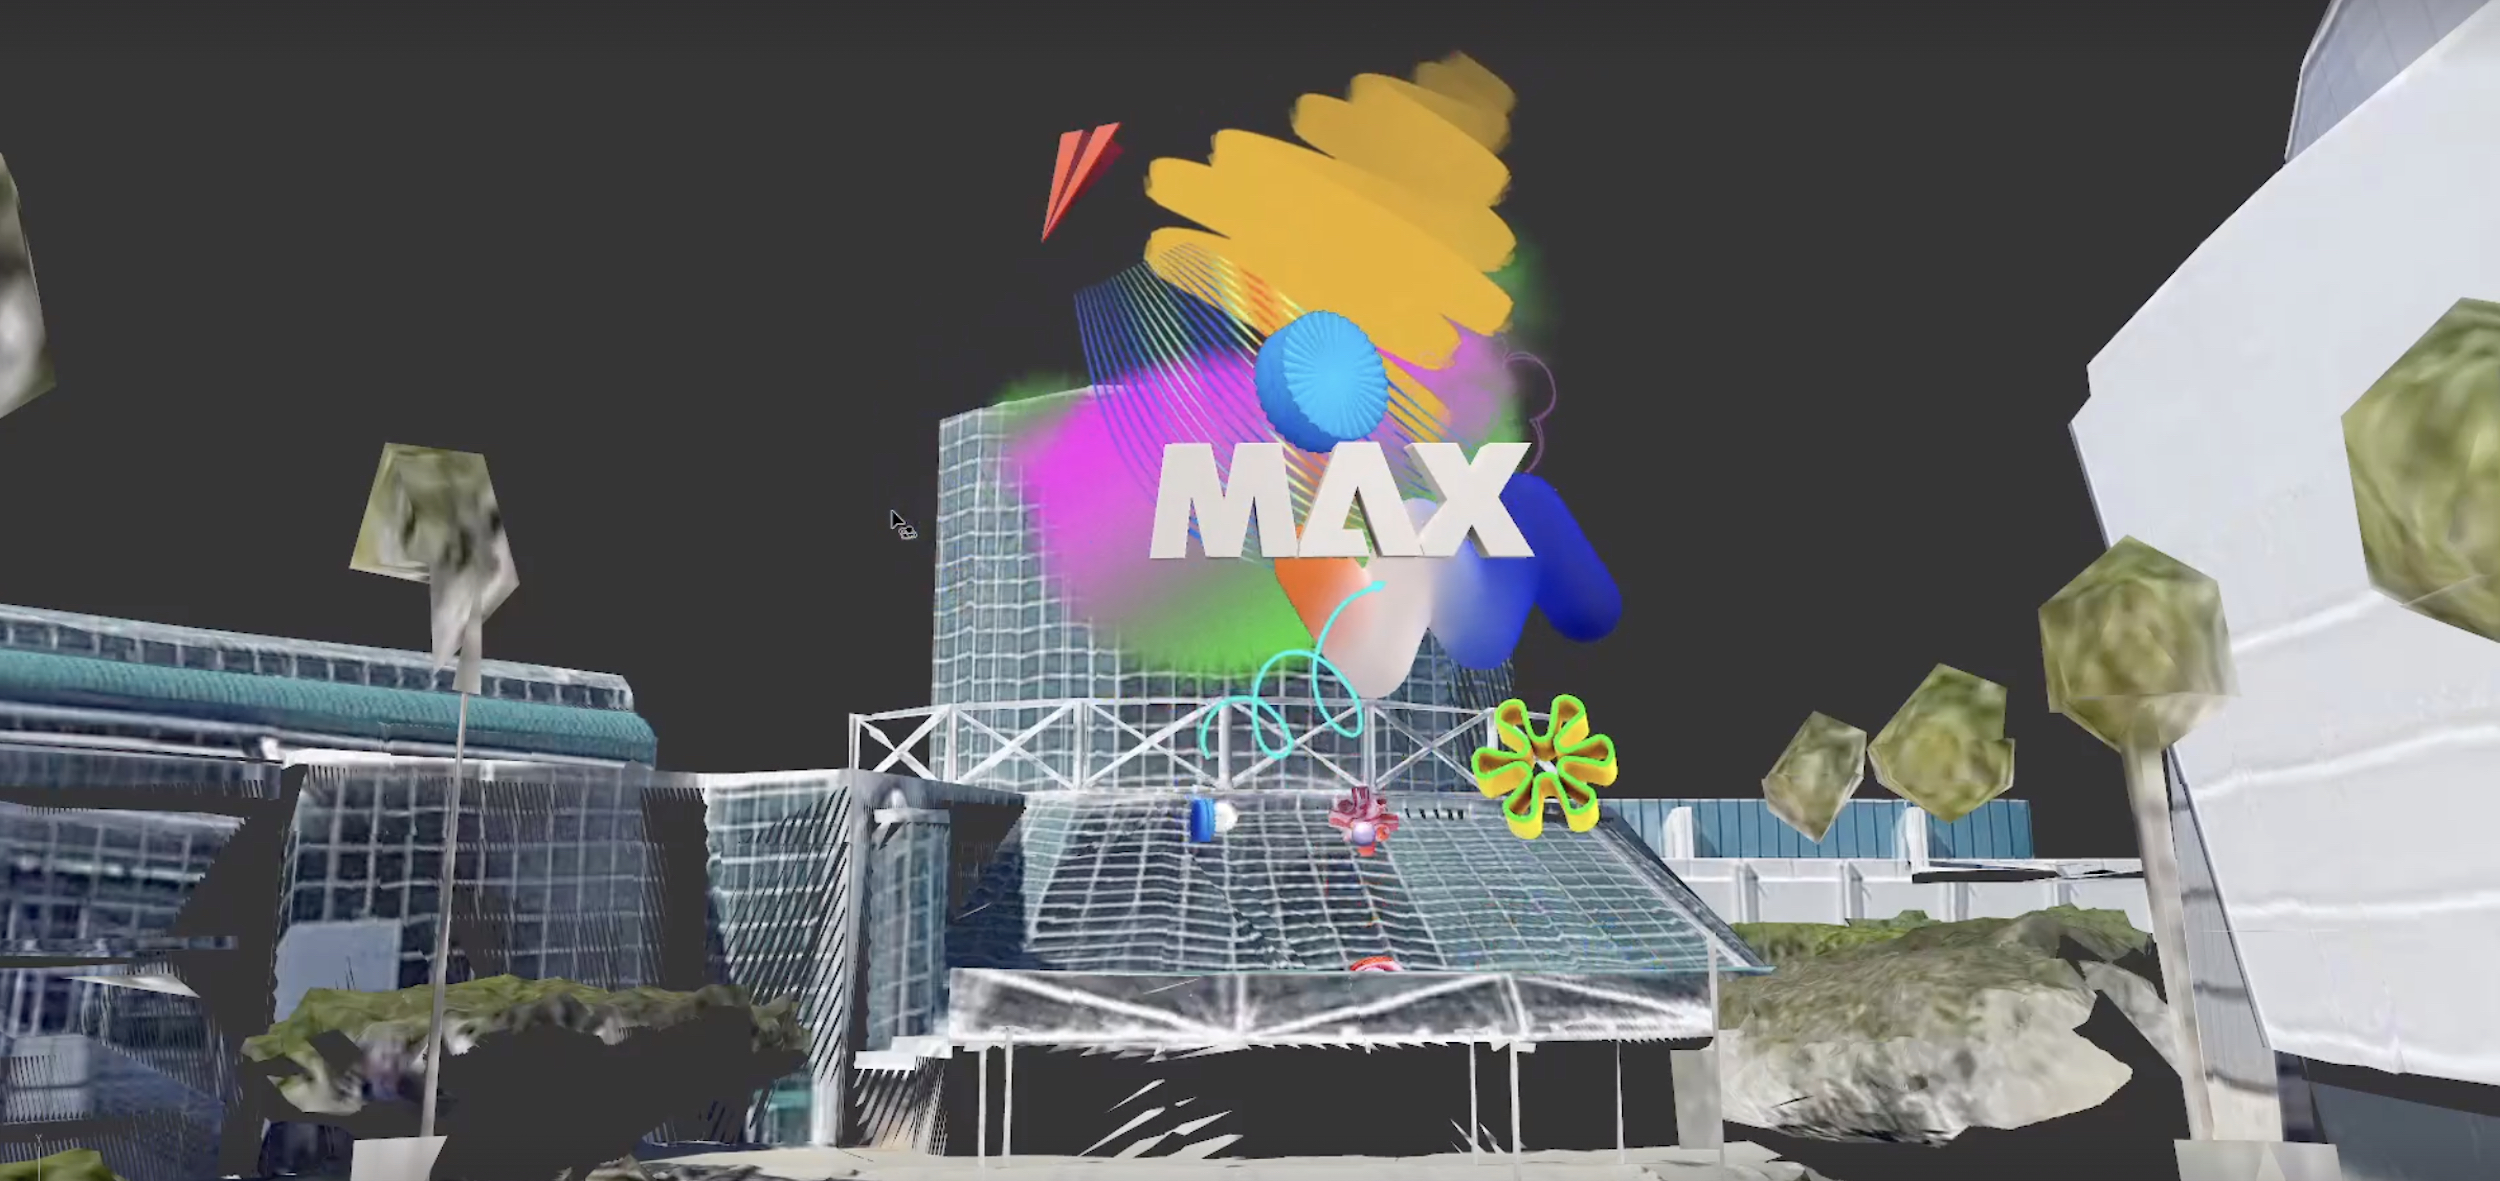 3D Billboard - Adobe Max Event